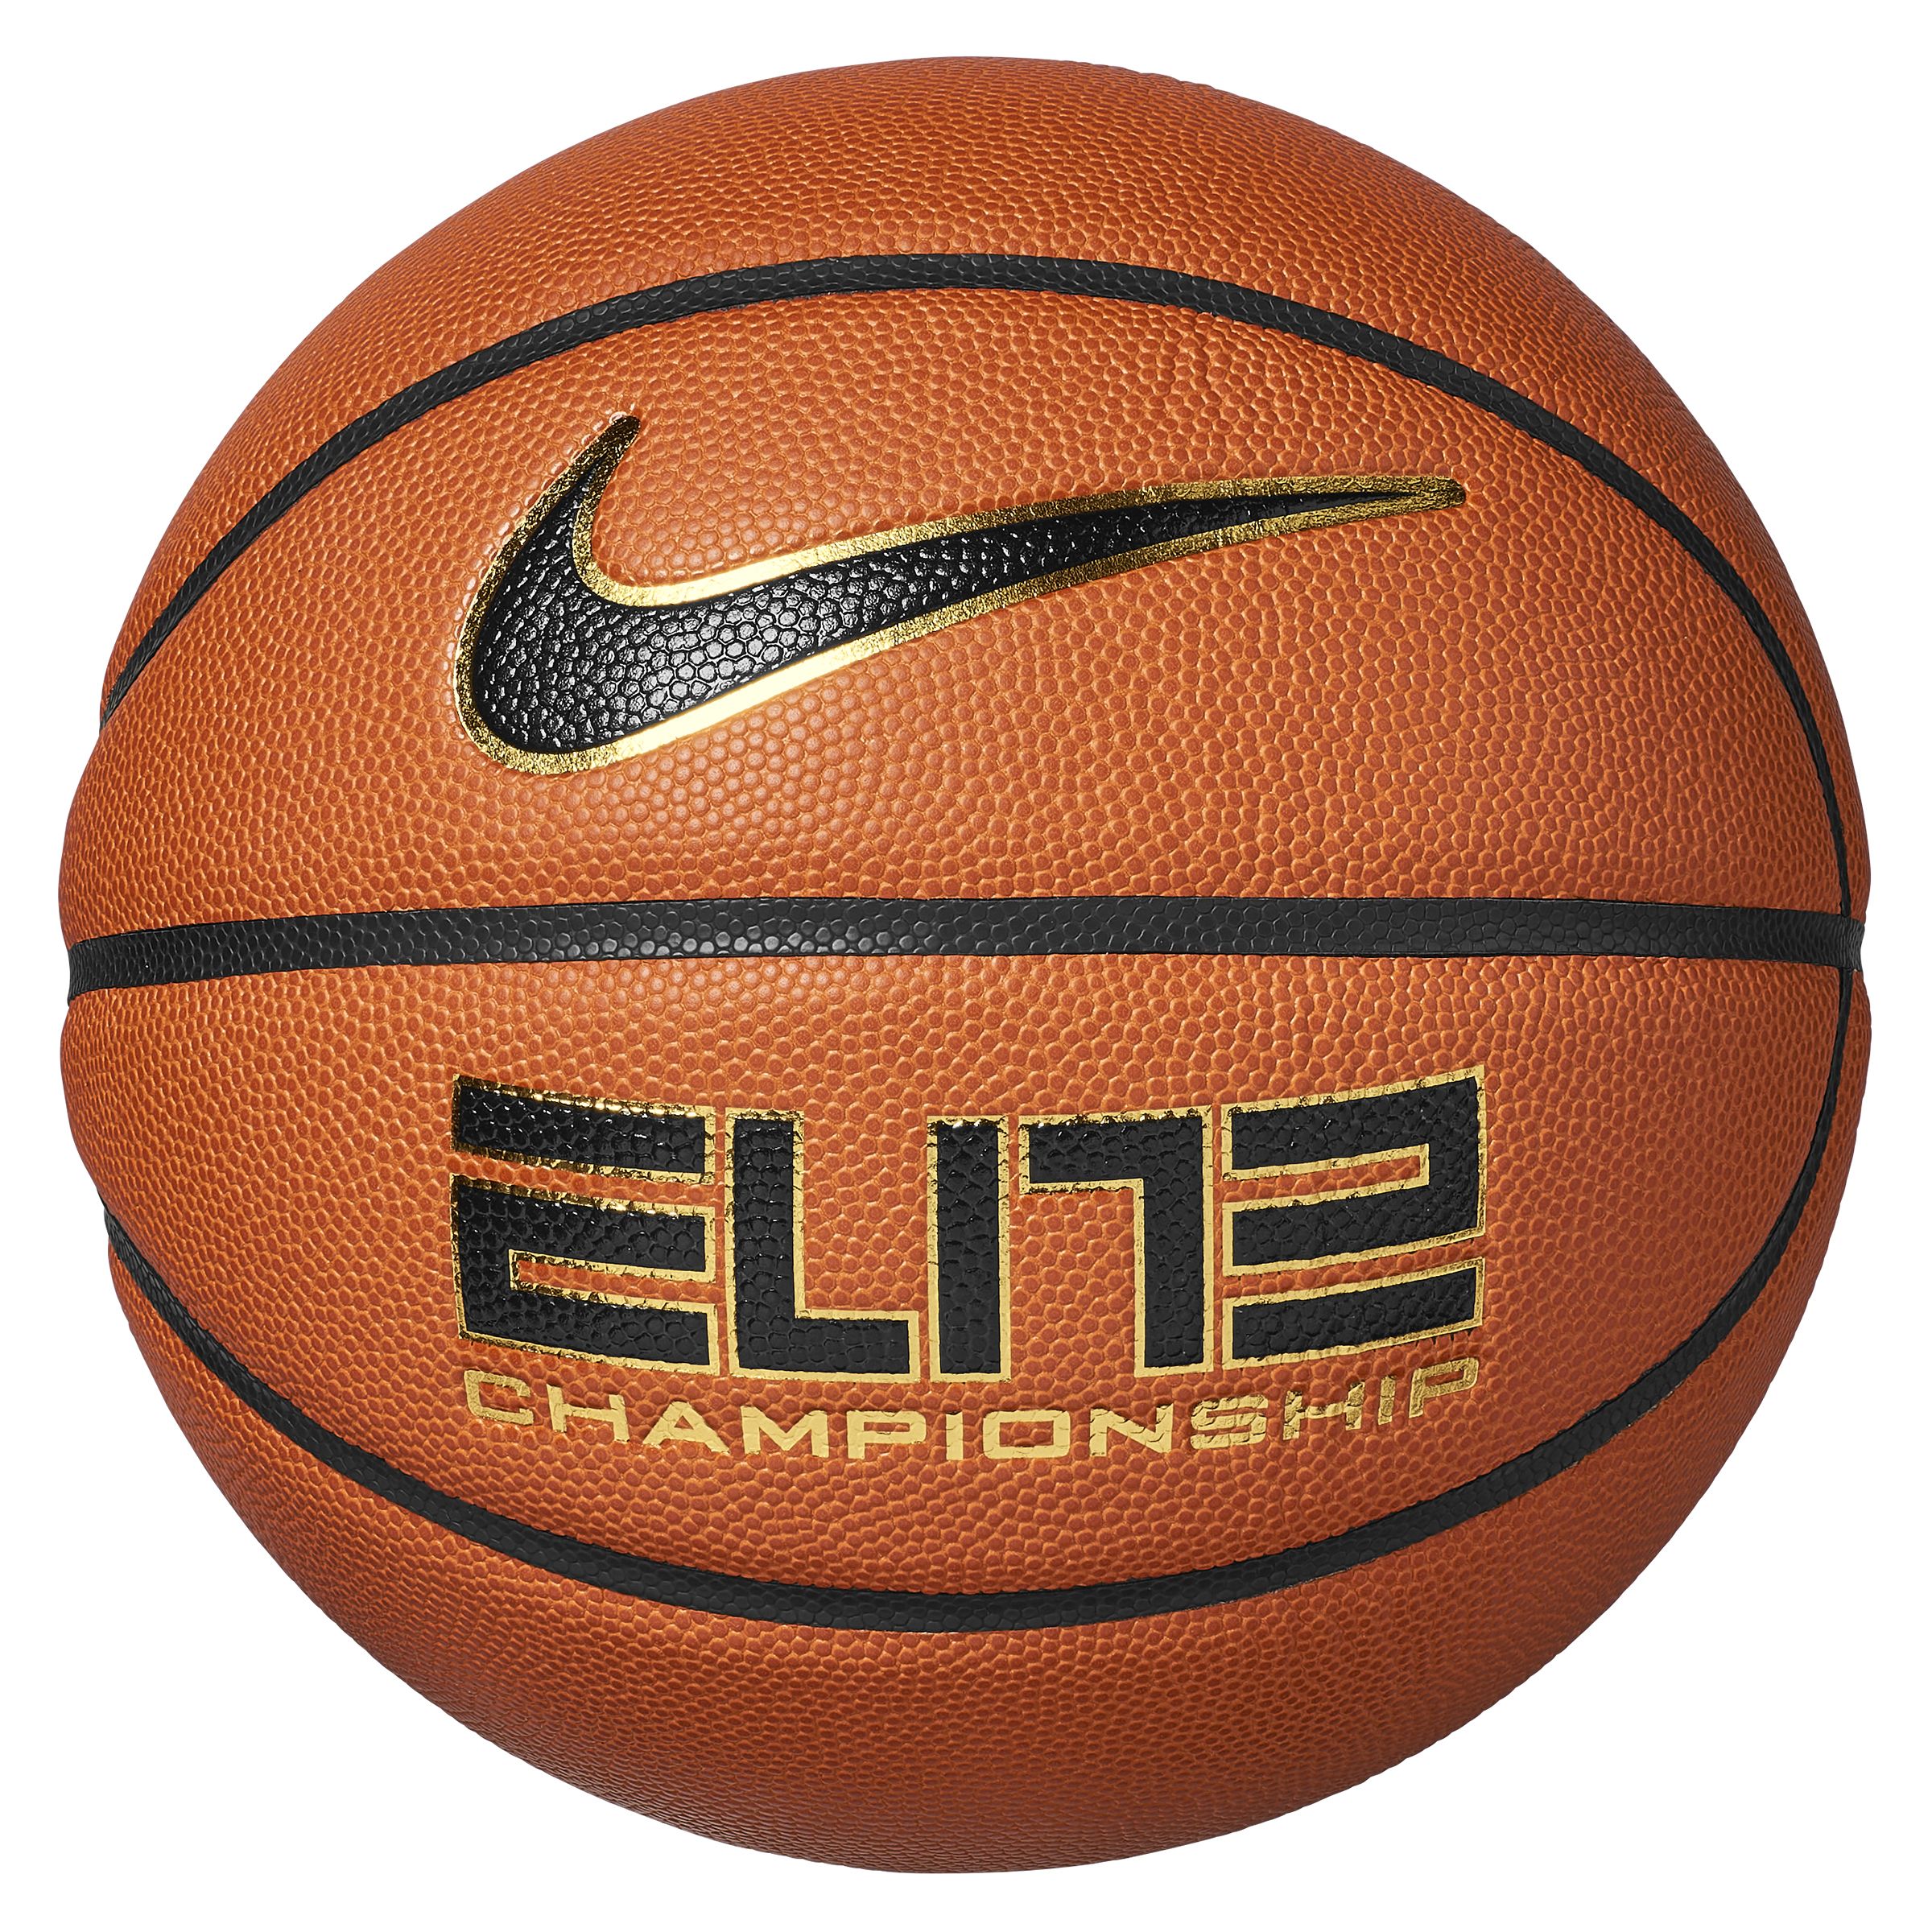 Image of Nike Elite Championship Amber Senior Basketball - Size 7